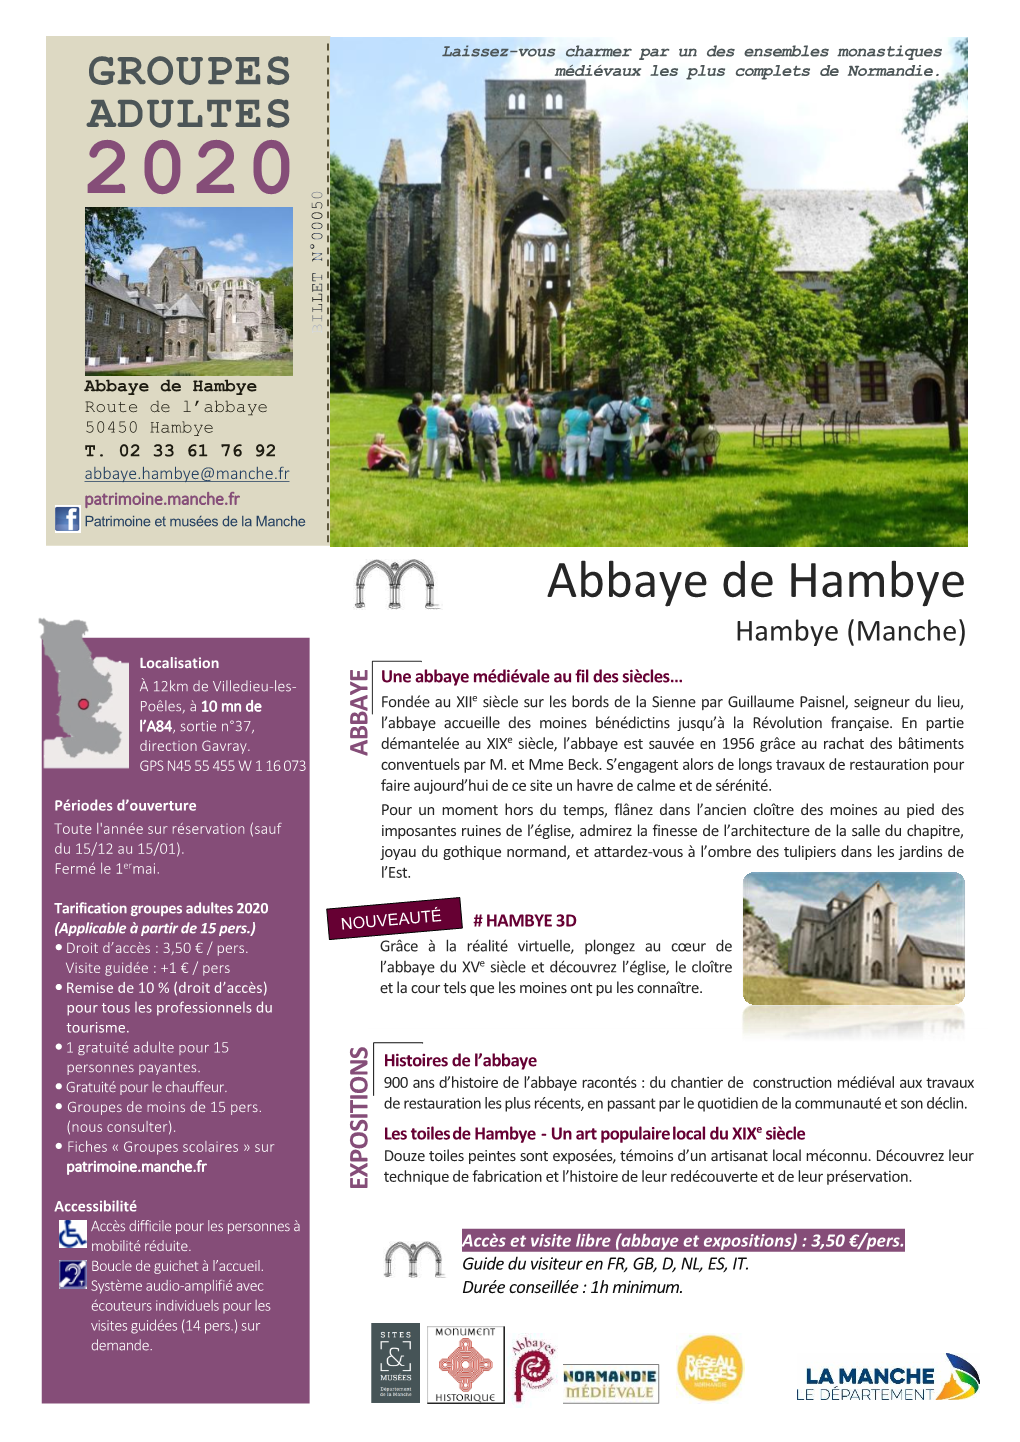 Abbaye De Hambye Route De L’Abbaye 50450 Hambye T